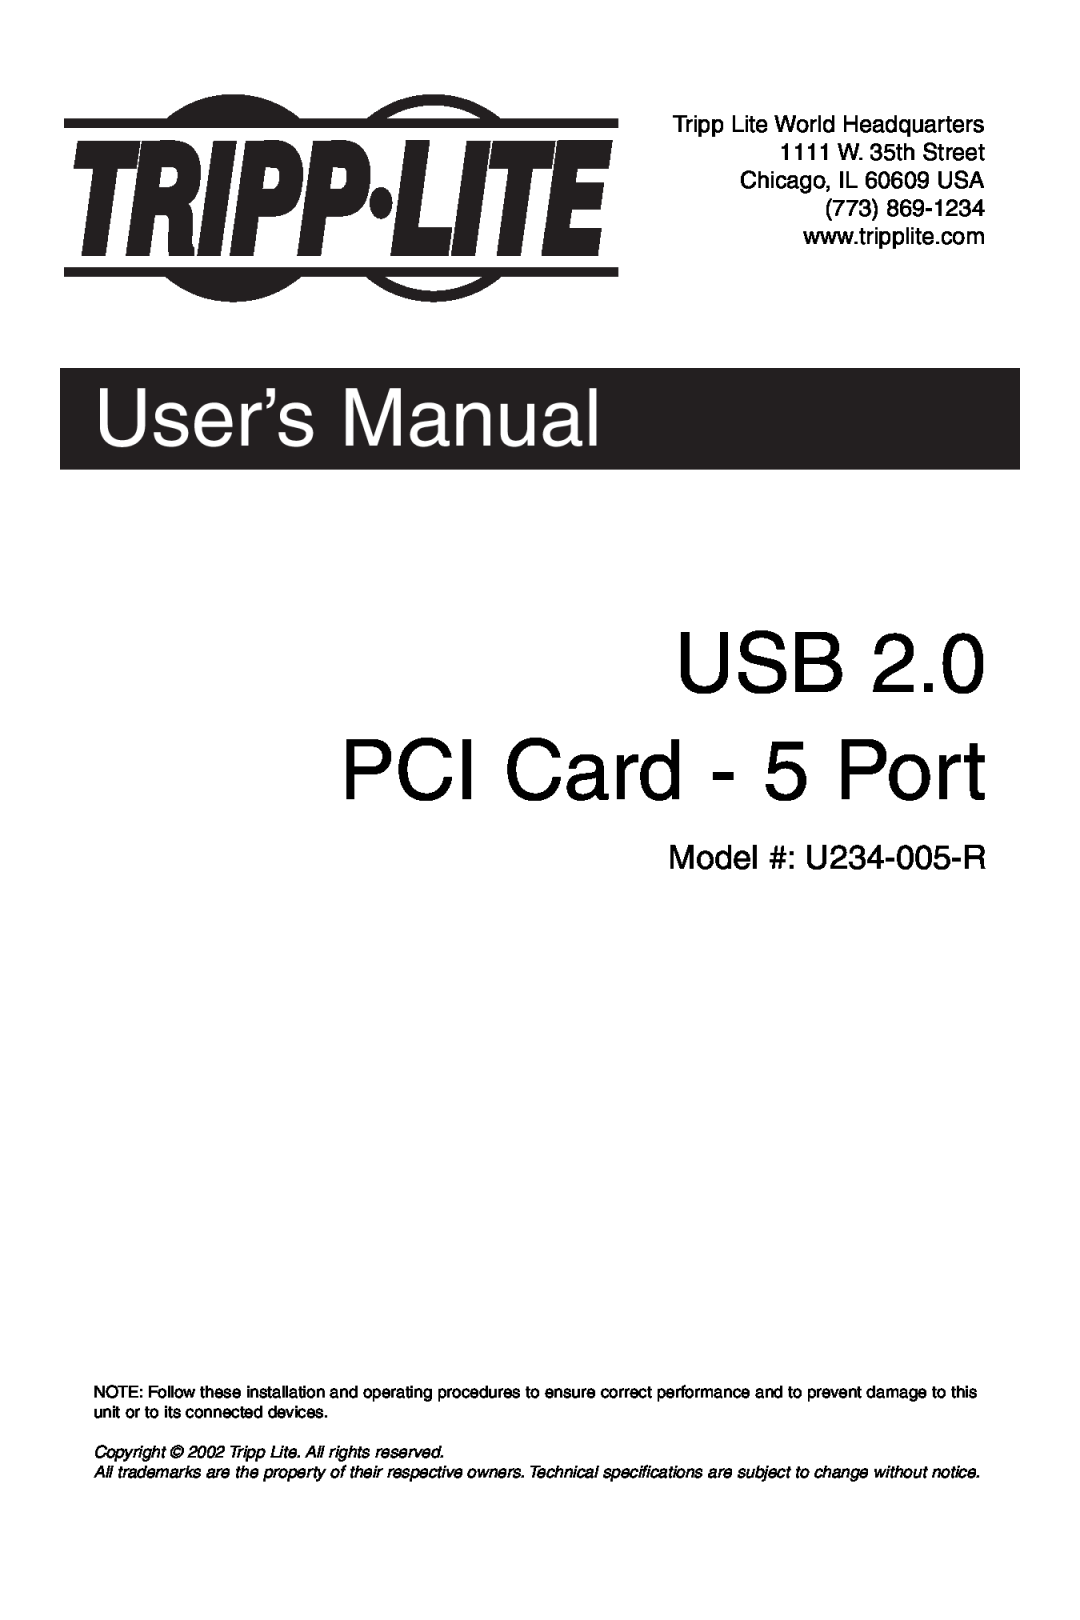 Tripp Lite U234-005-R user manual USB PCI Card - 5 Port, User’s Manual, Tripp Lite World Headquarters 1111 W. 35th Street 